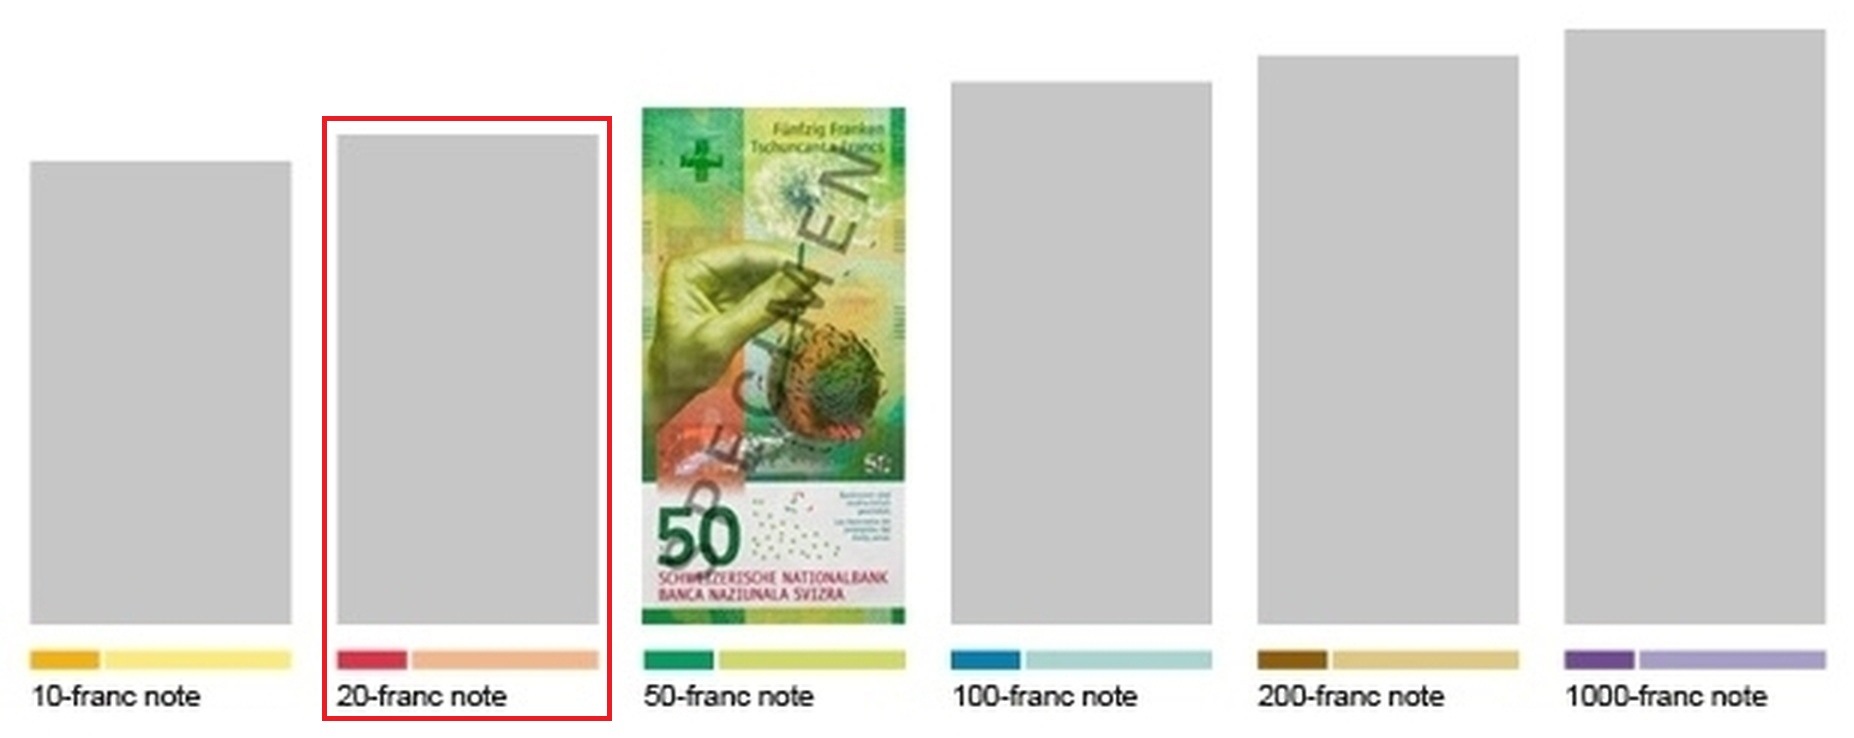 Szwajcaria wyda nowy banknot obiegowy o nominale 20 franków